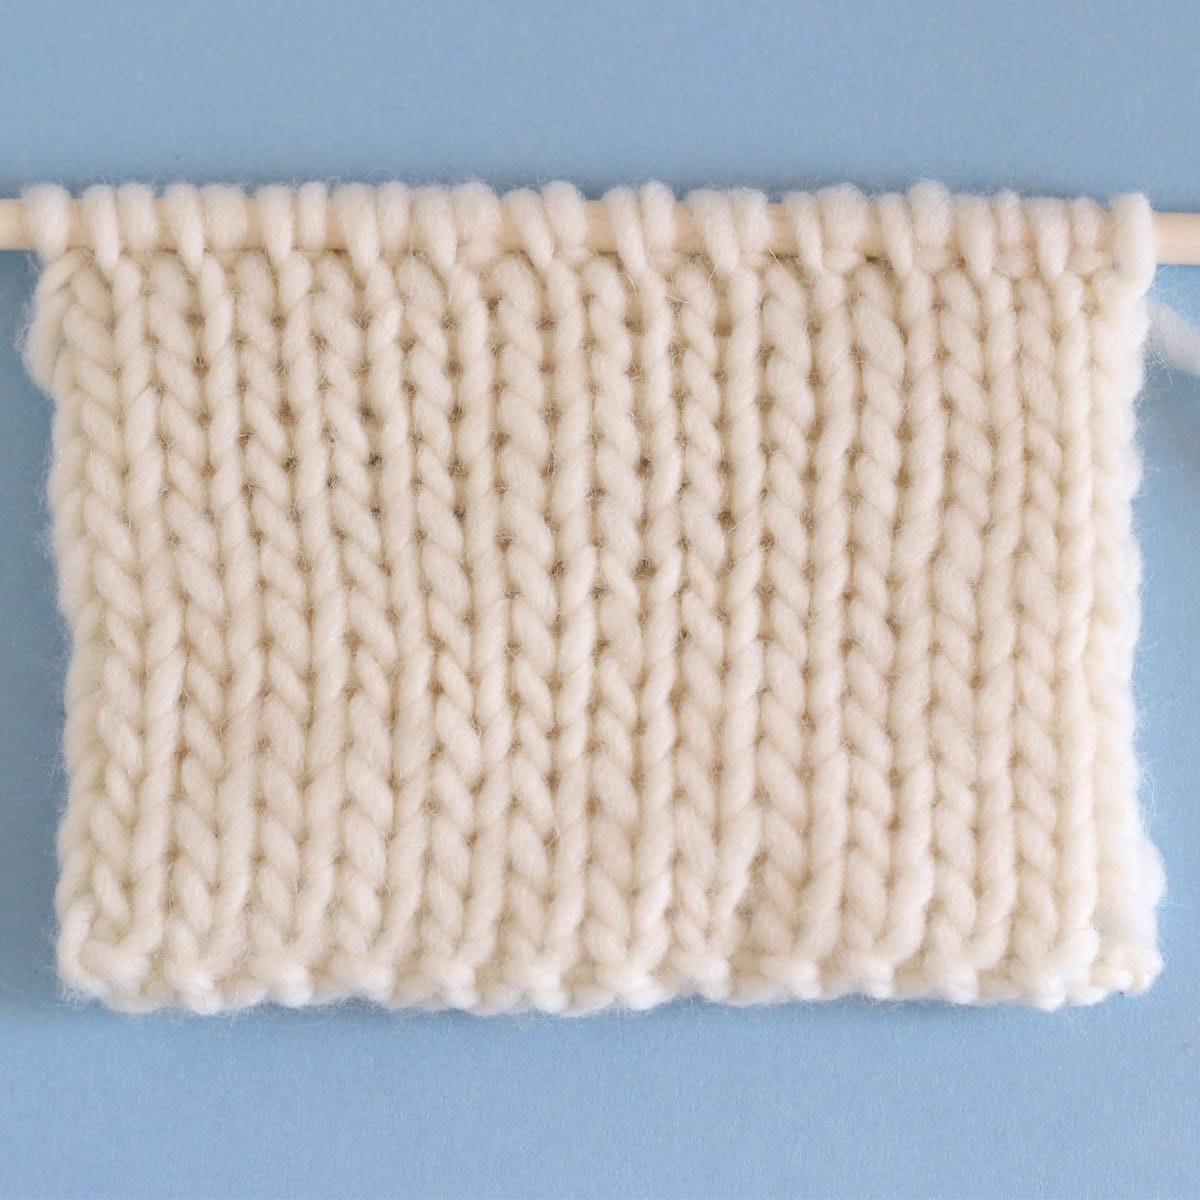 Double Stockinette Stitch Knitting Pattern - Studio Knit